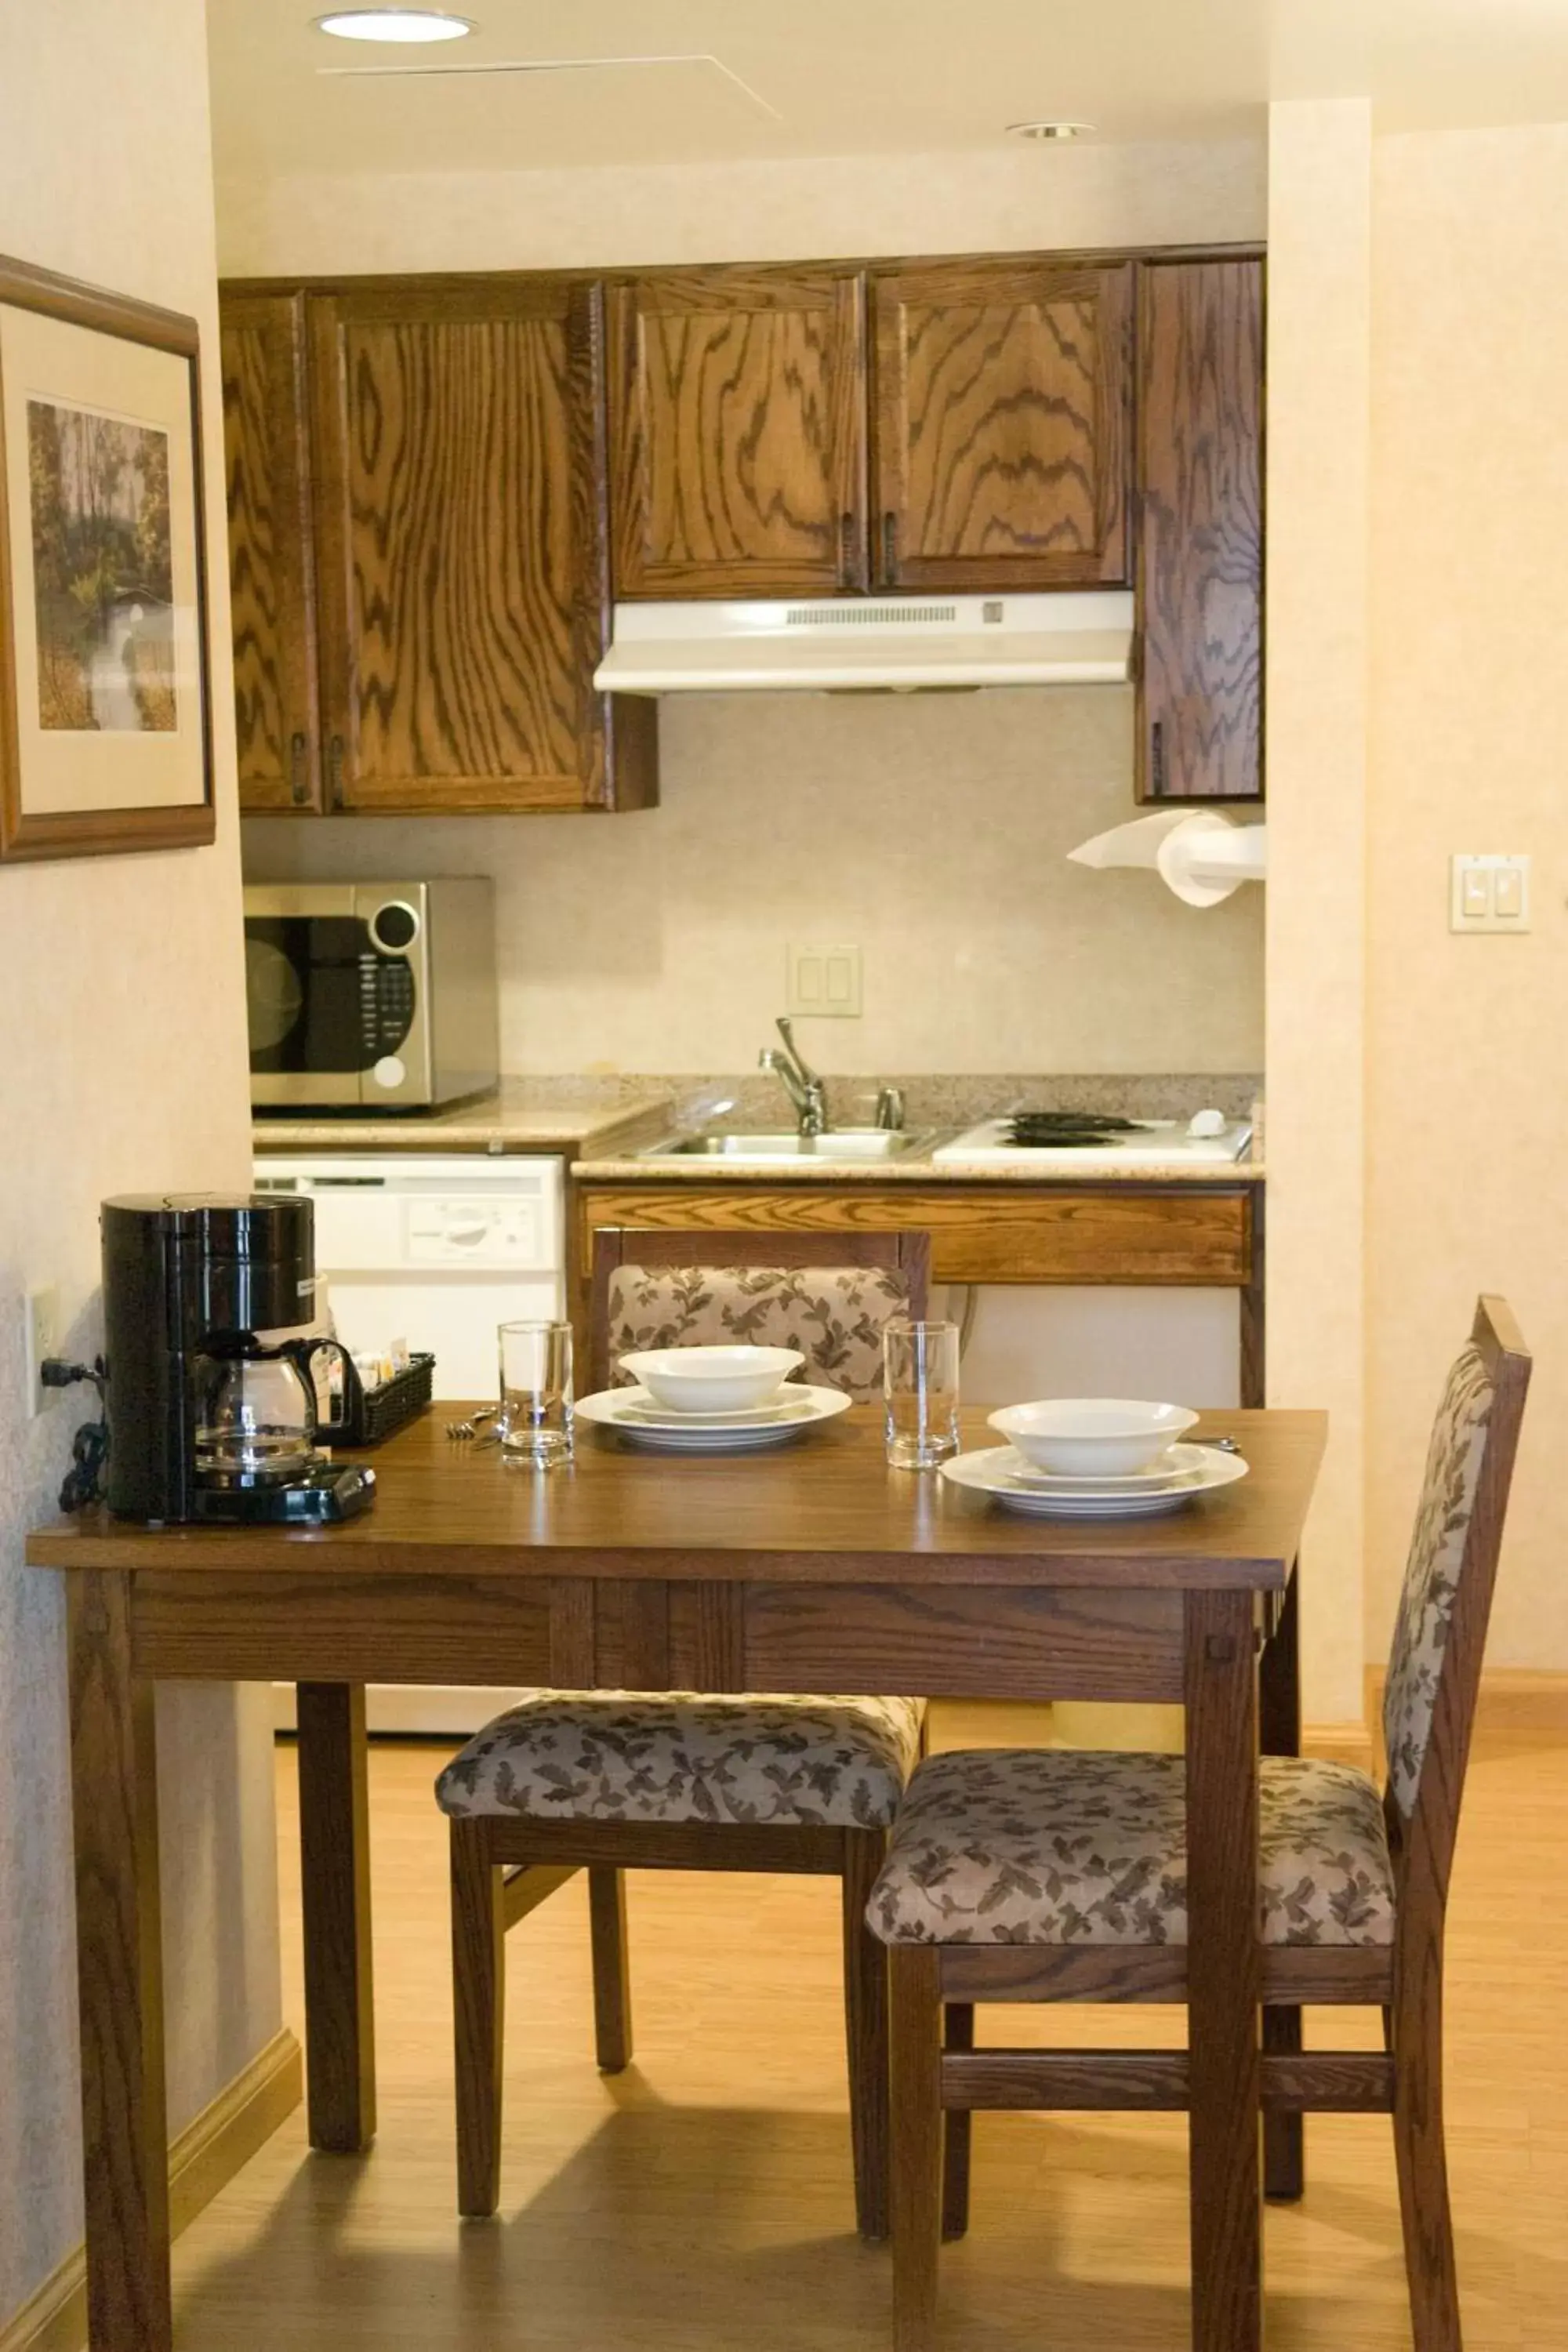 Kitchen or kitchenette, Kitchen/Kitchenette in Homewood Suites Bakersfield